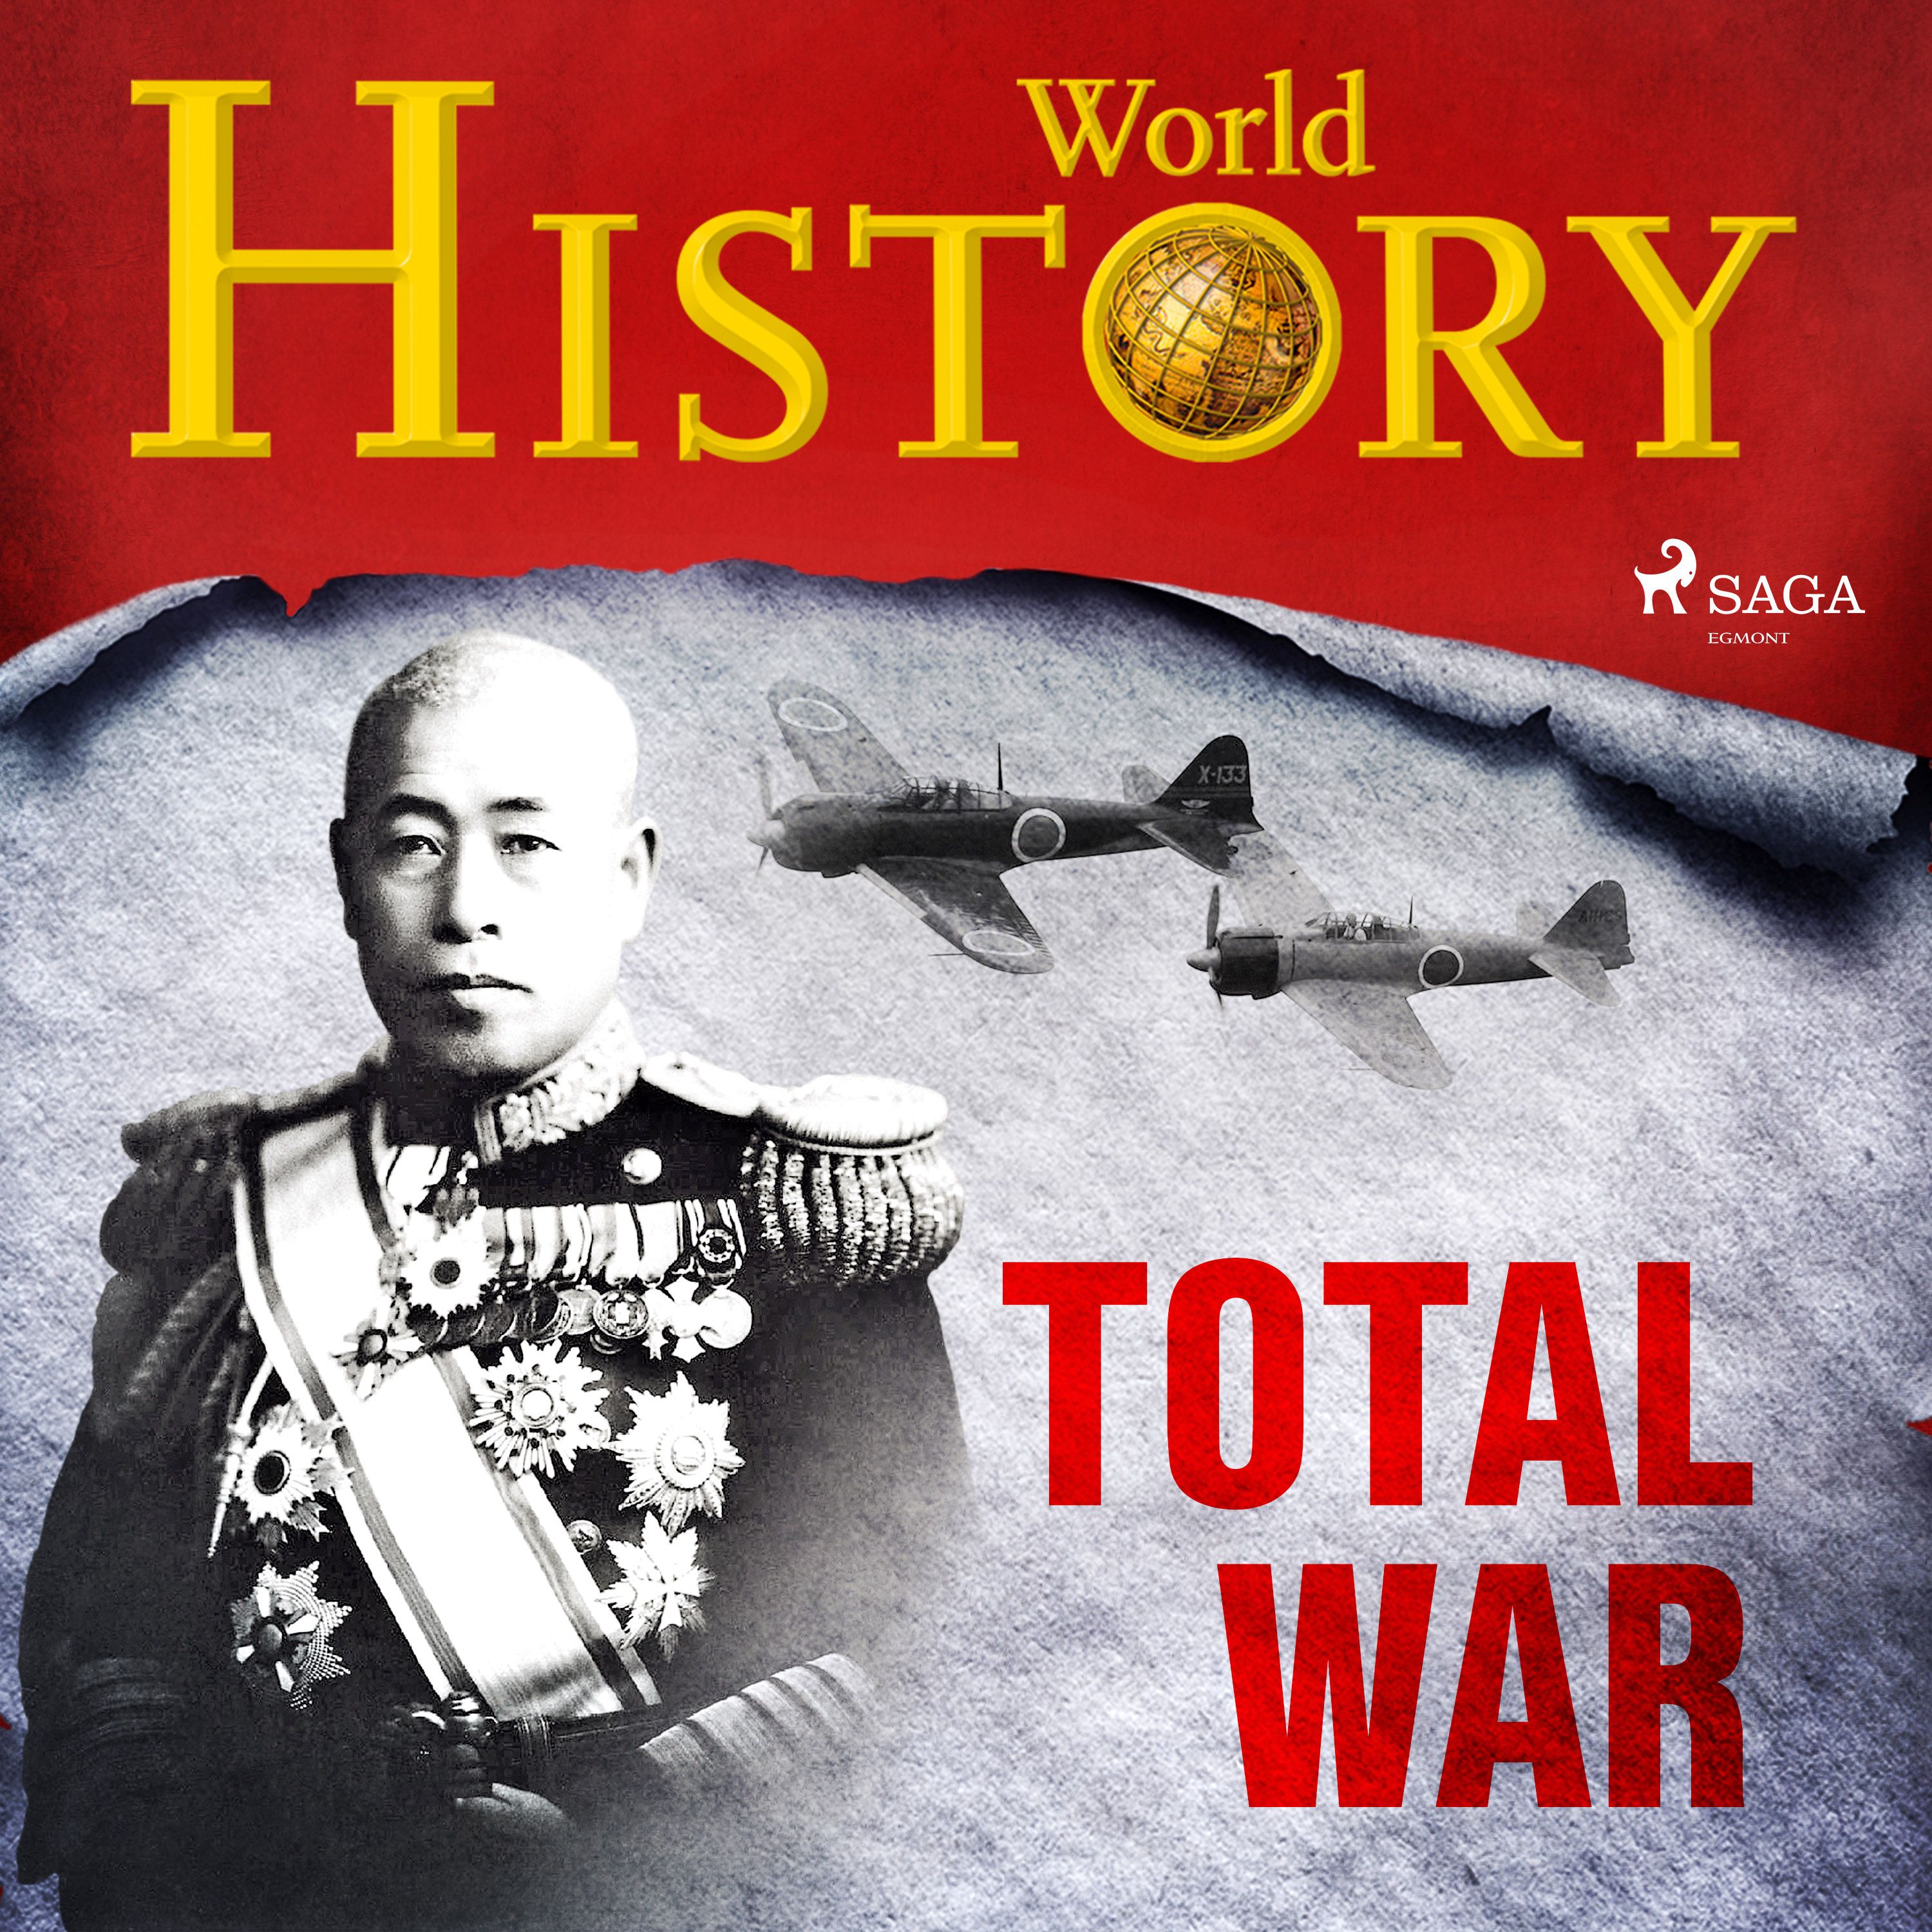 Total War, lydbog af World History